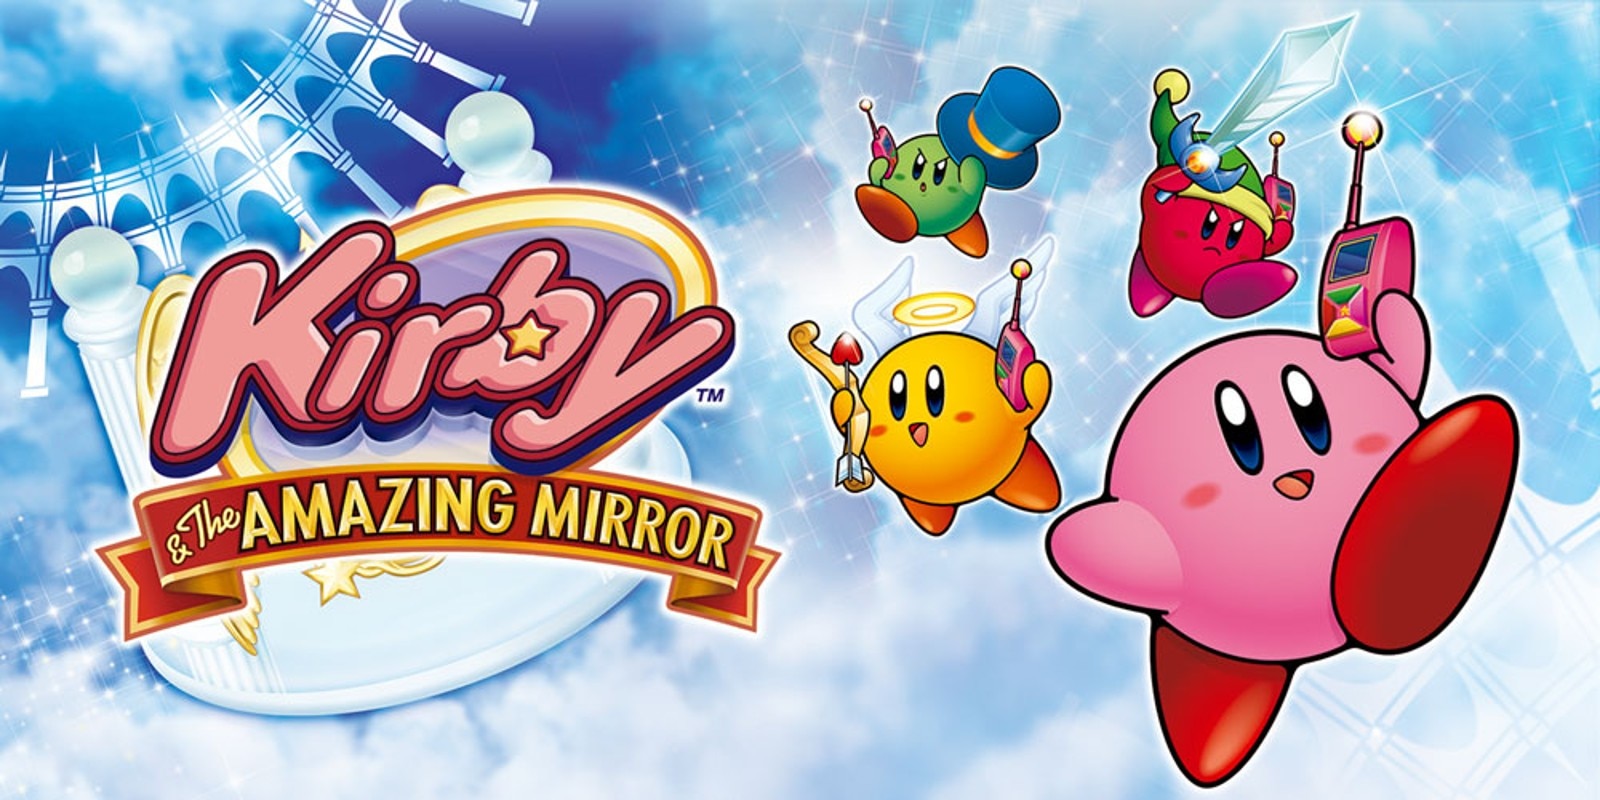 Steam Workshop::Kirby & the Amazing Mirror